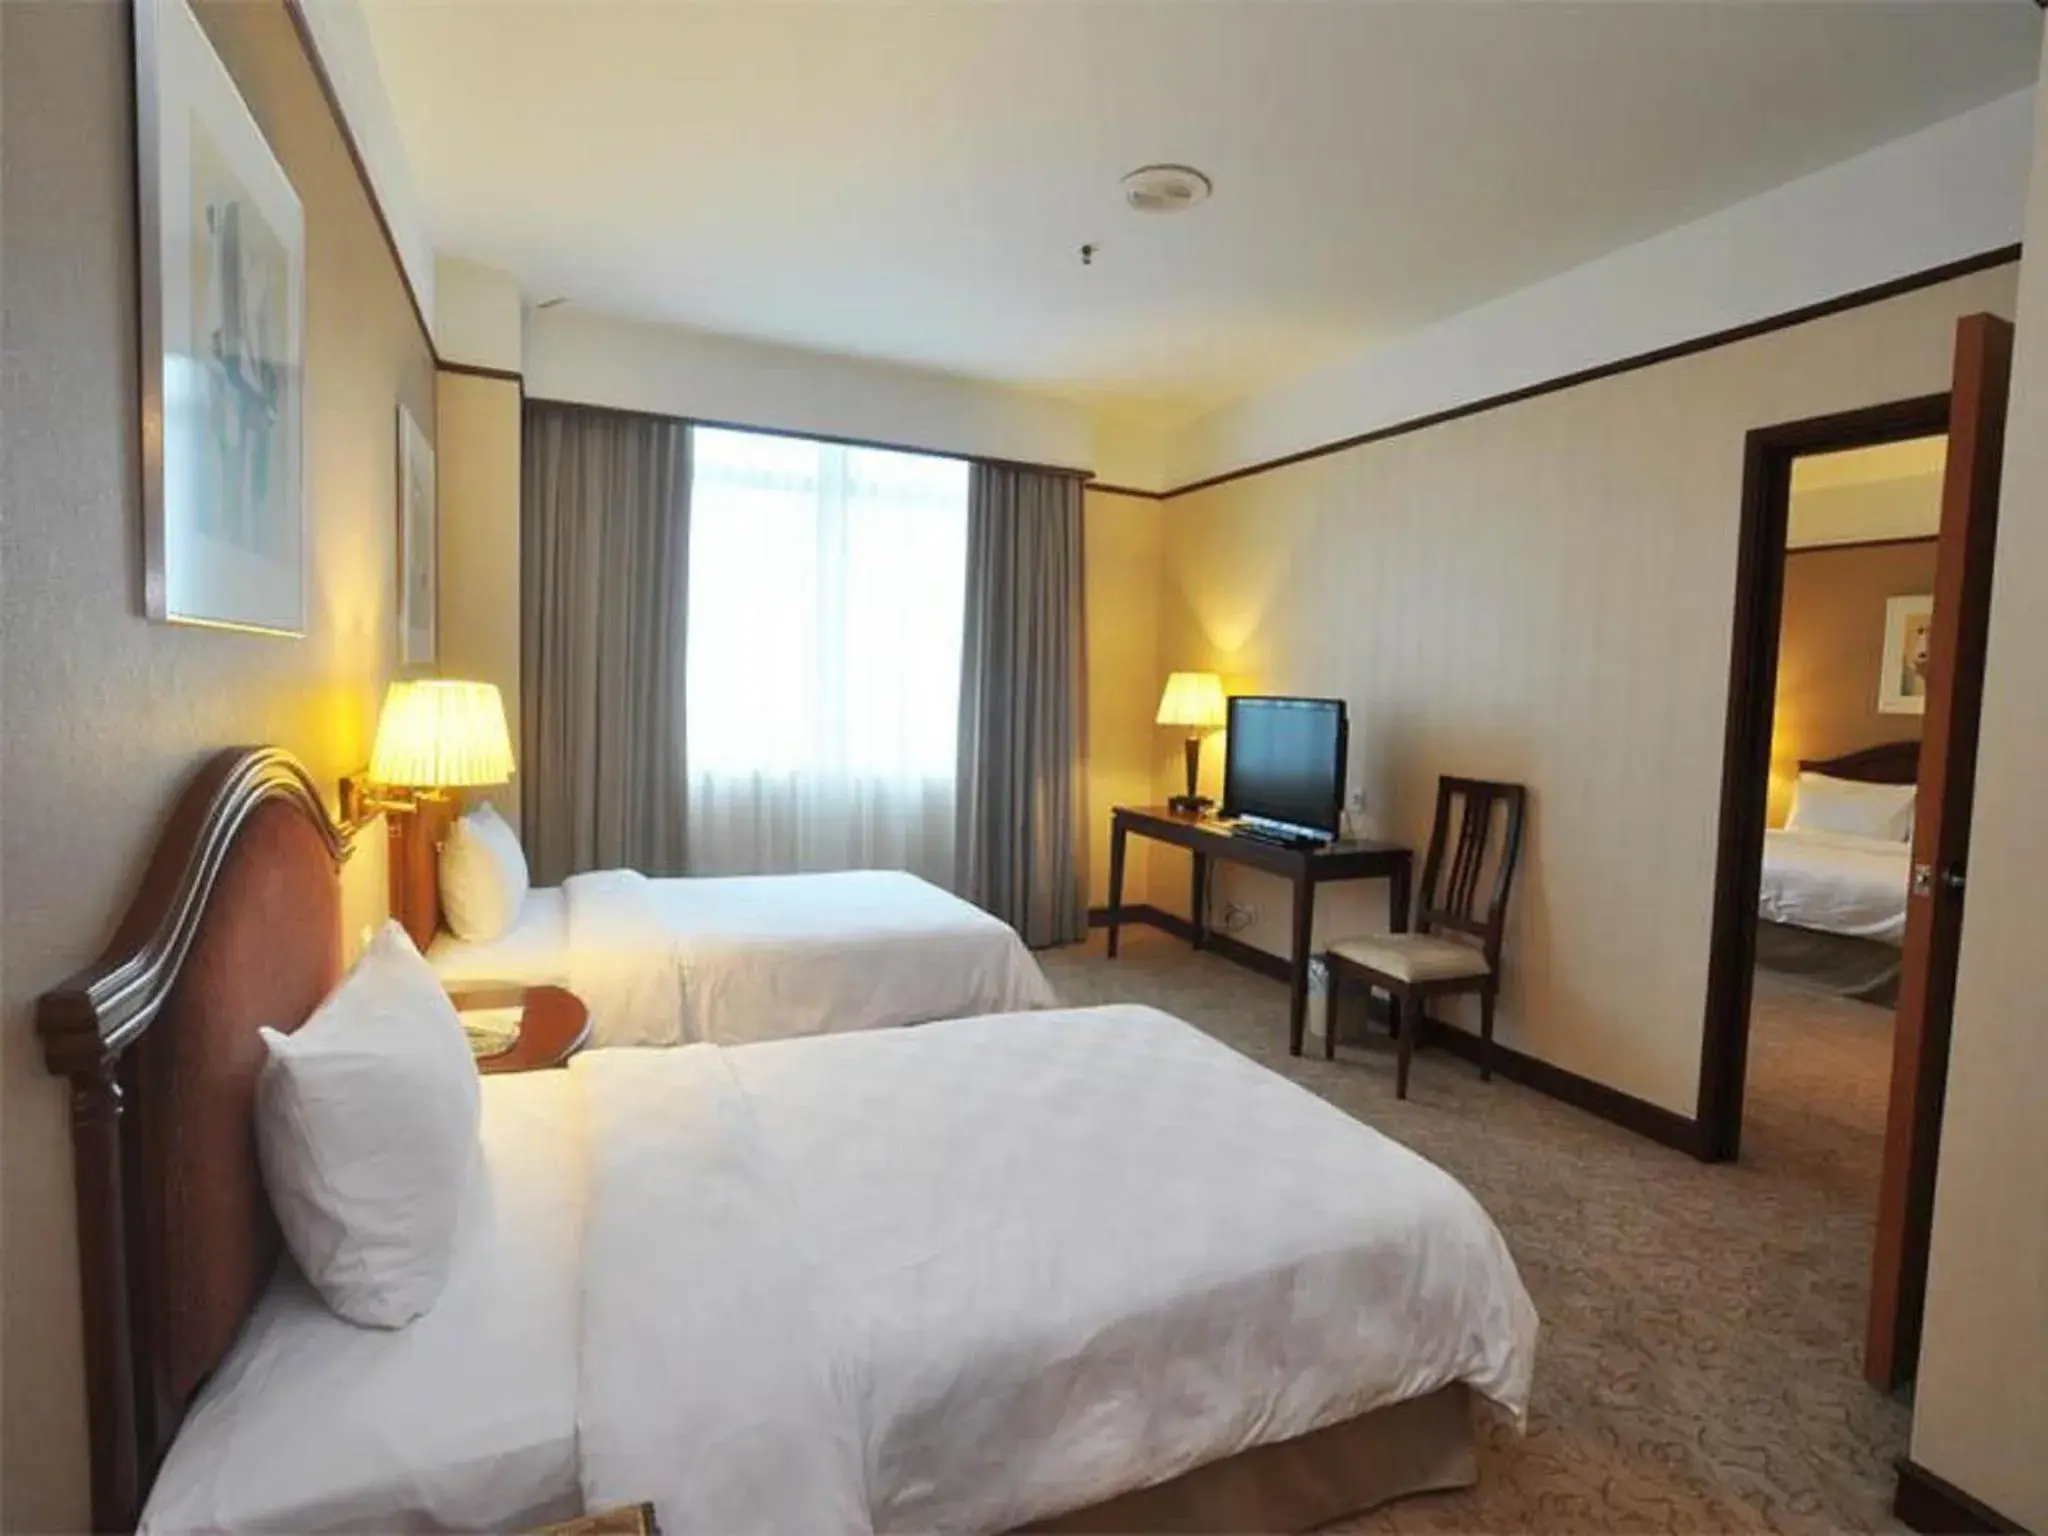 Bedroom, Room Photo in GBW Hotel